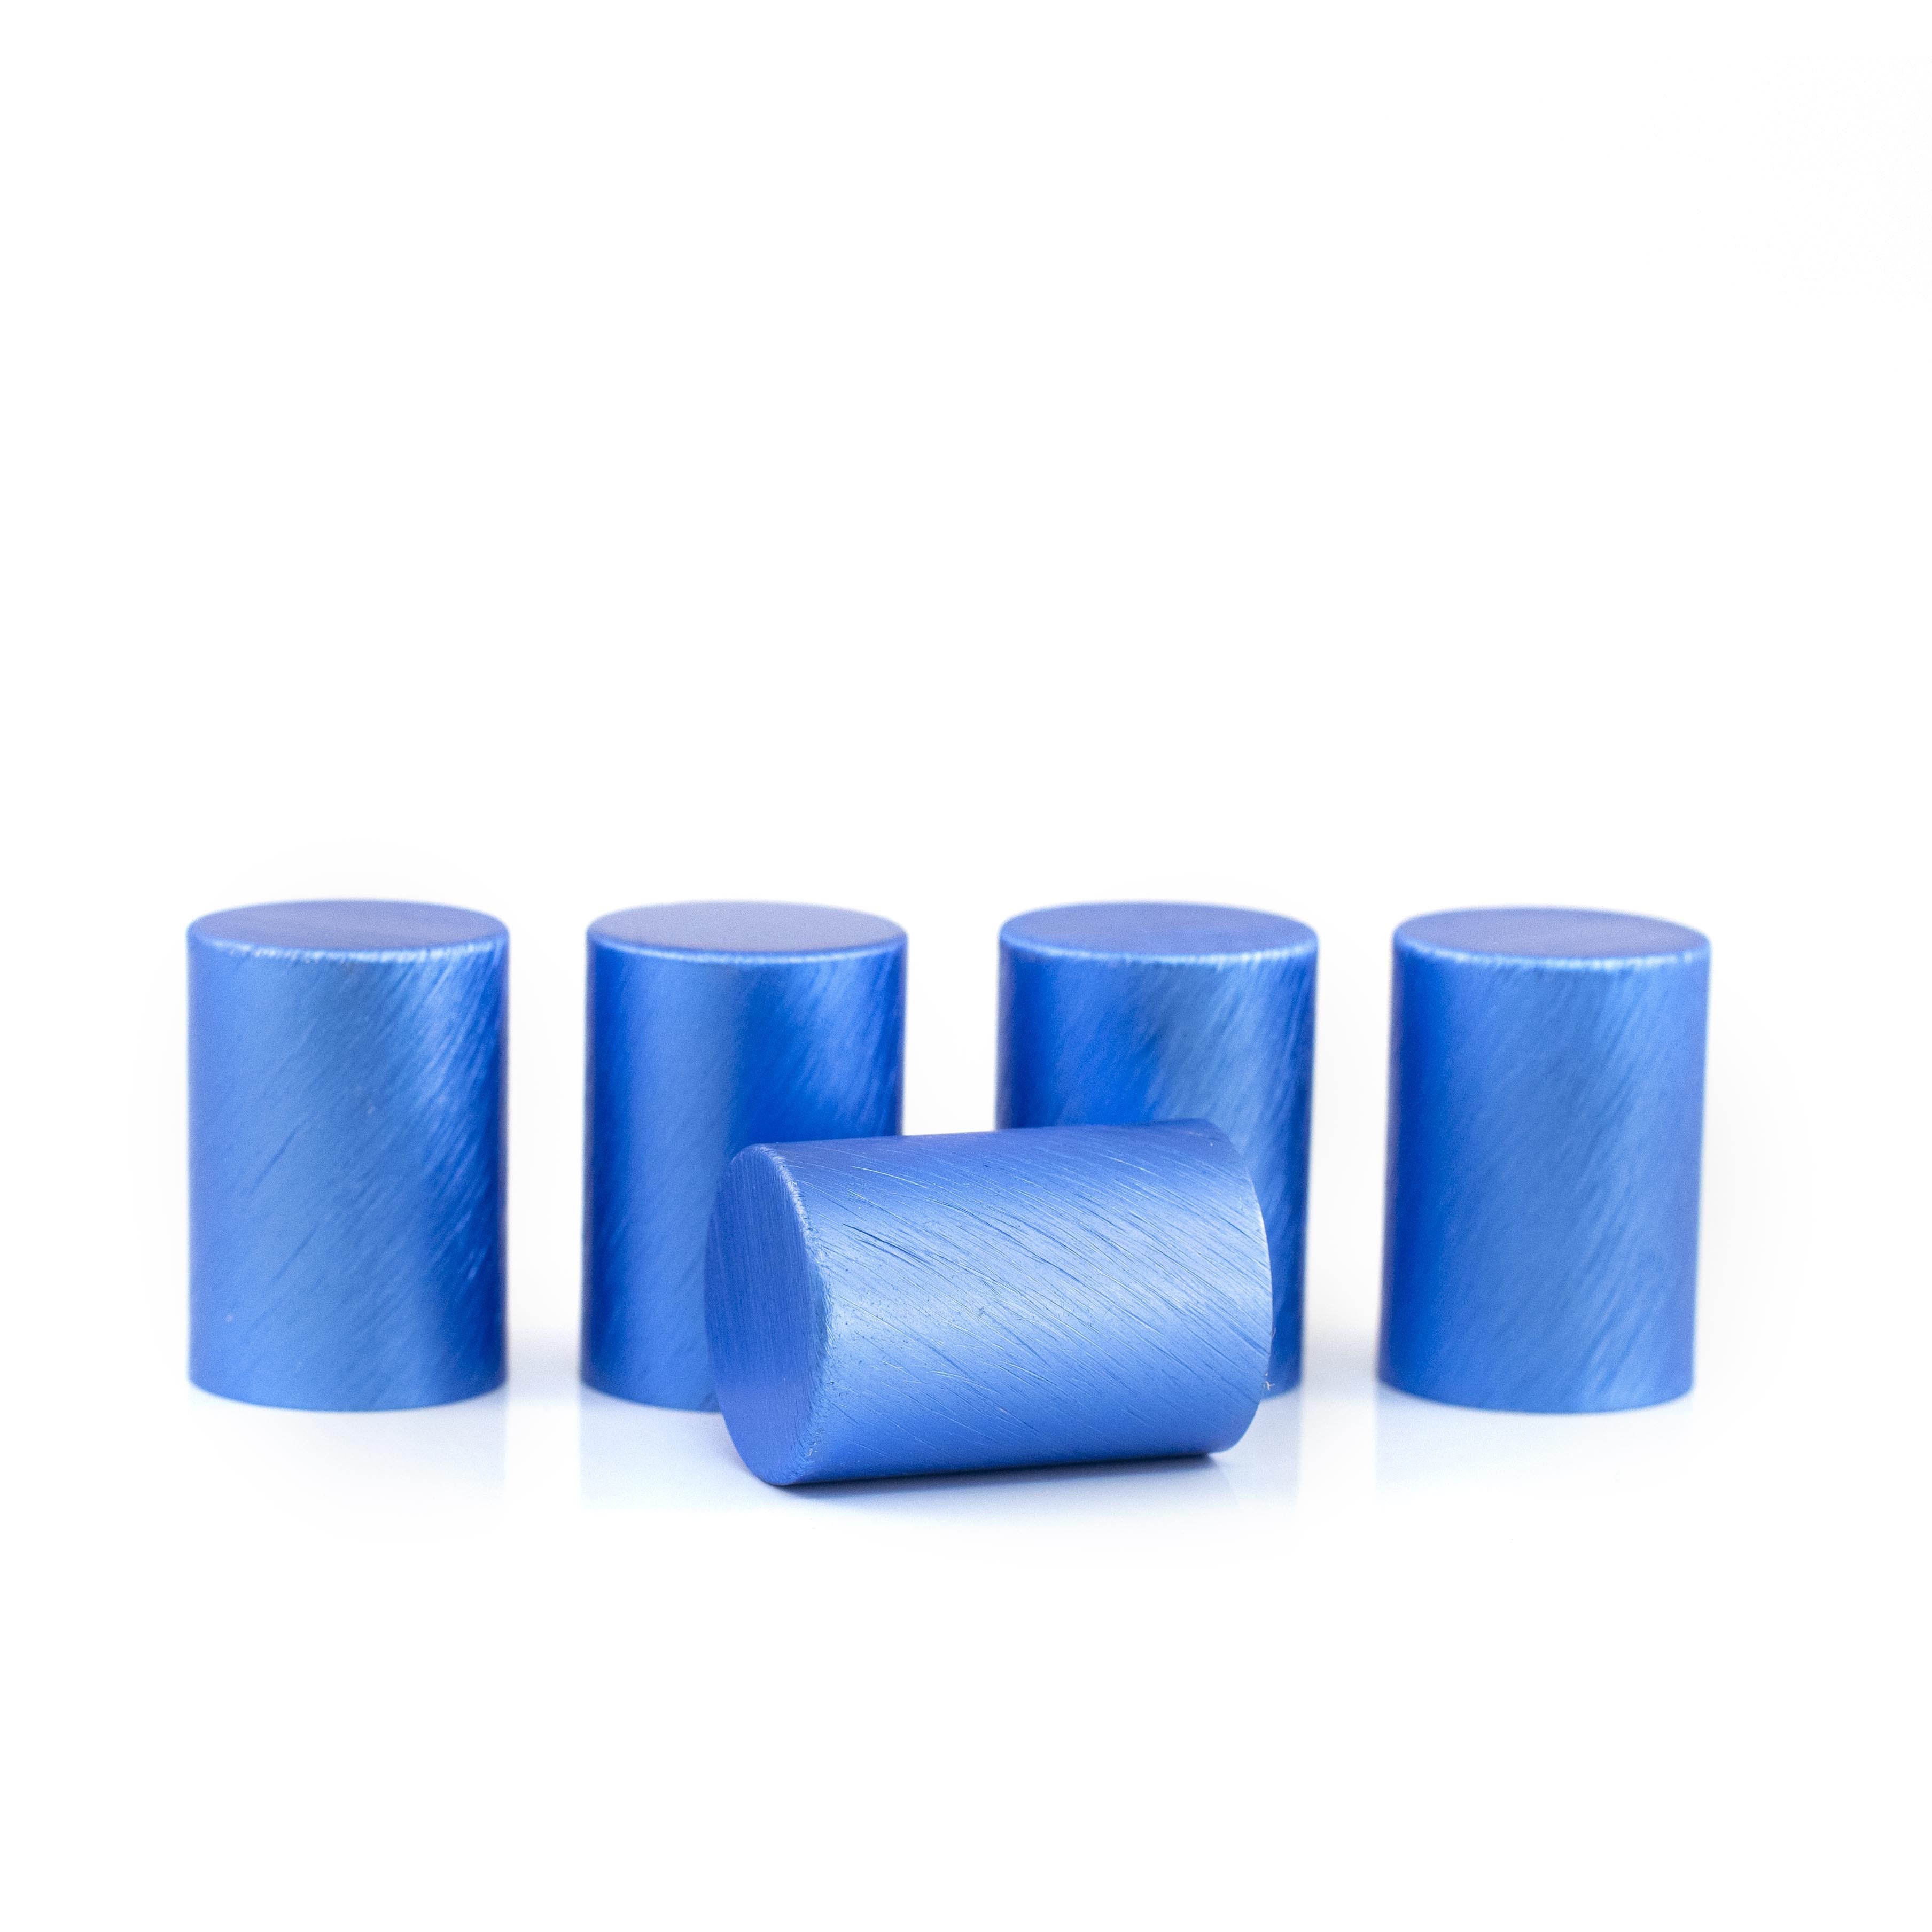 Fém kupakok (5 db) Roll-on üveghengerekhez, Kék színben